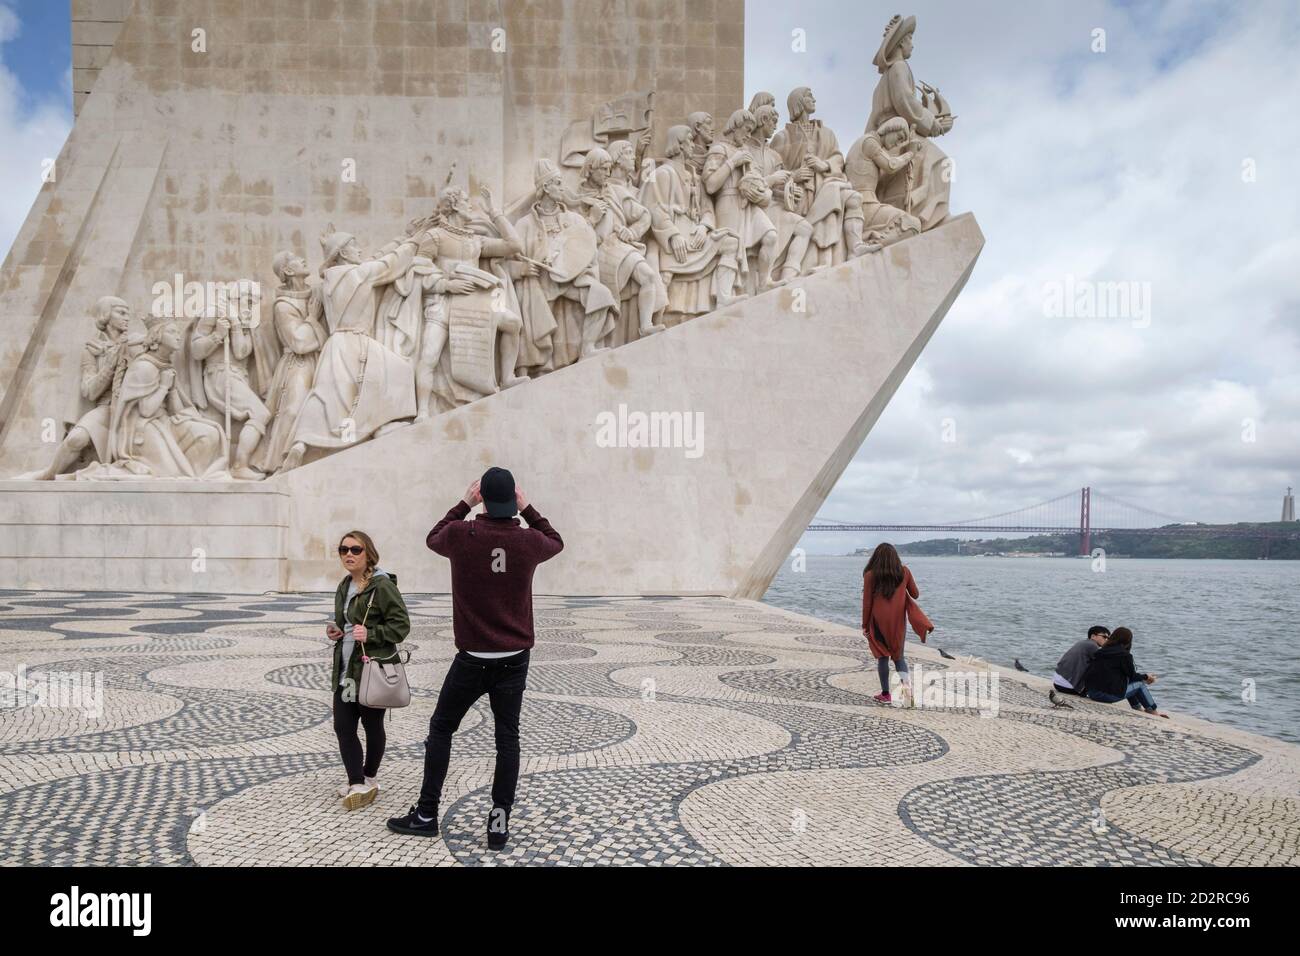 Monumento a los Descubrimientos , -Monumento aos Descobrimentos-,  construido en 1960, Belém,Lisboa, Portugal Stock Photo